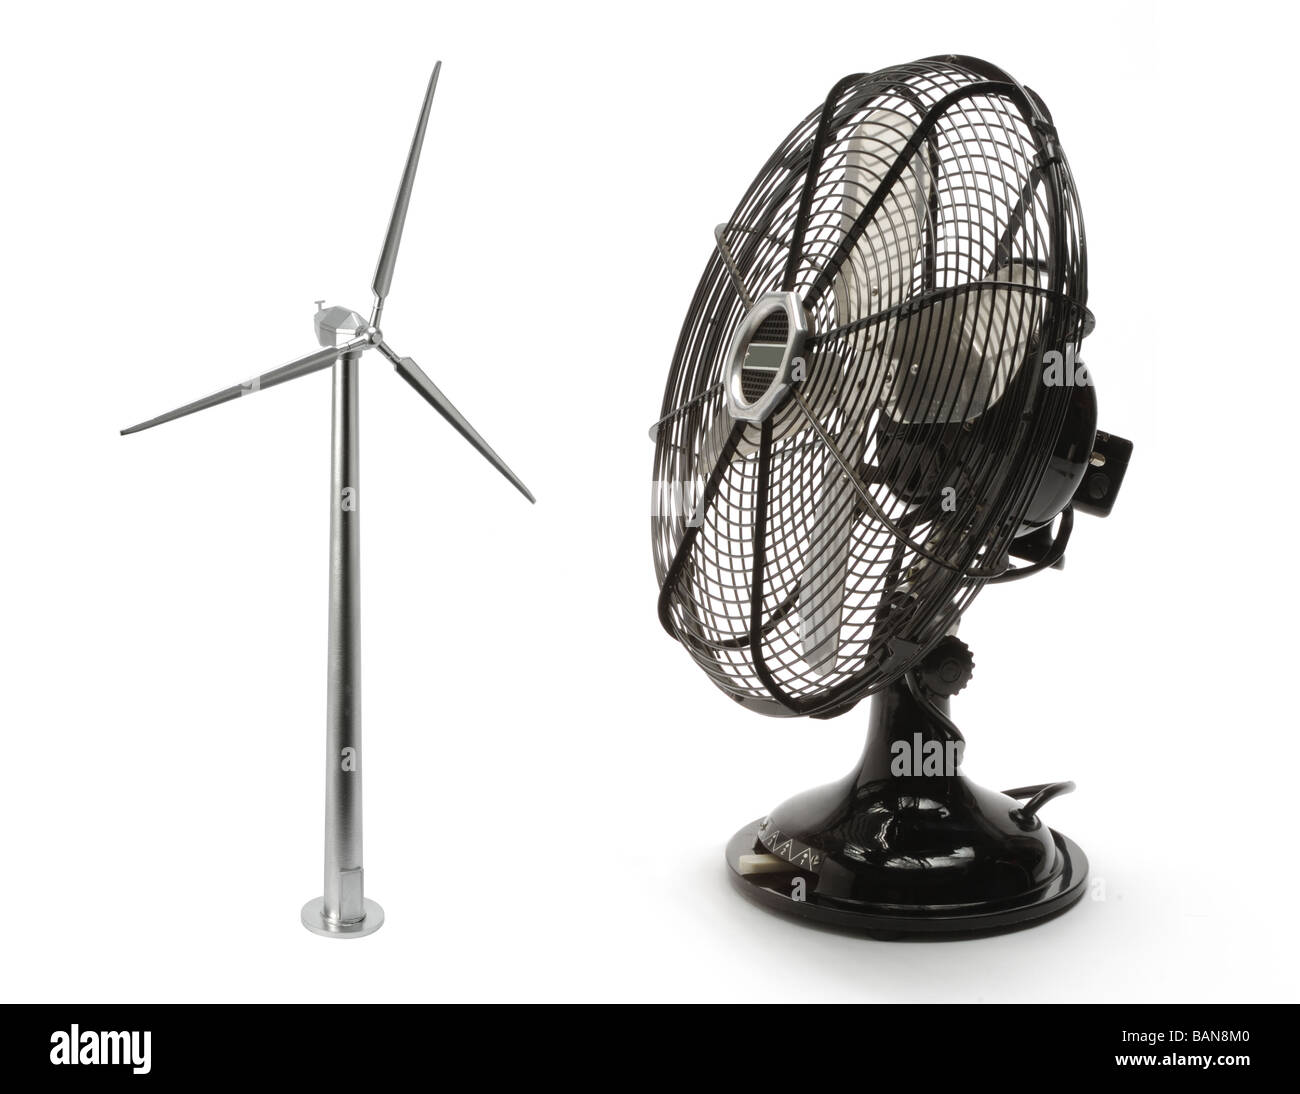 Un vin modèle turbine et d'un ventilateur en métal Banque D'Images